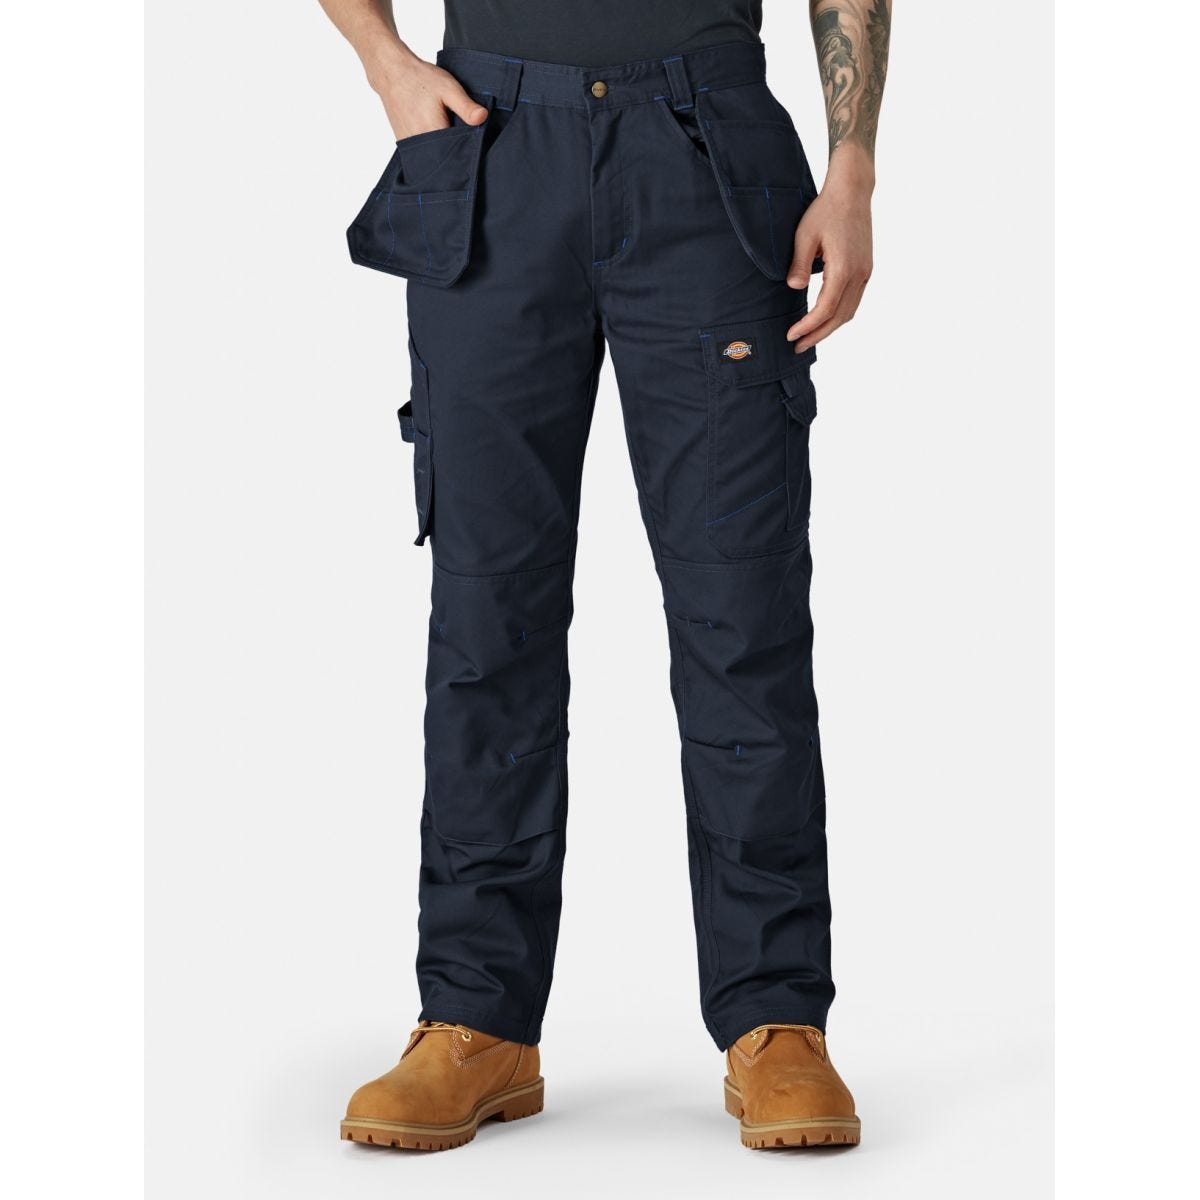 Pantalon Redhawk Pro Bleu marine - Dickies - Taille 38 0